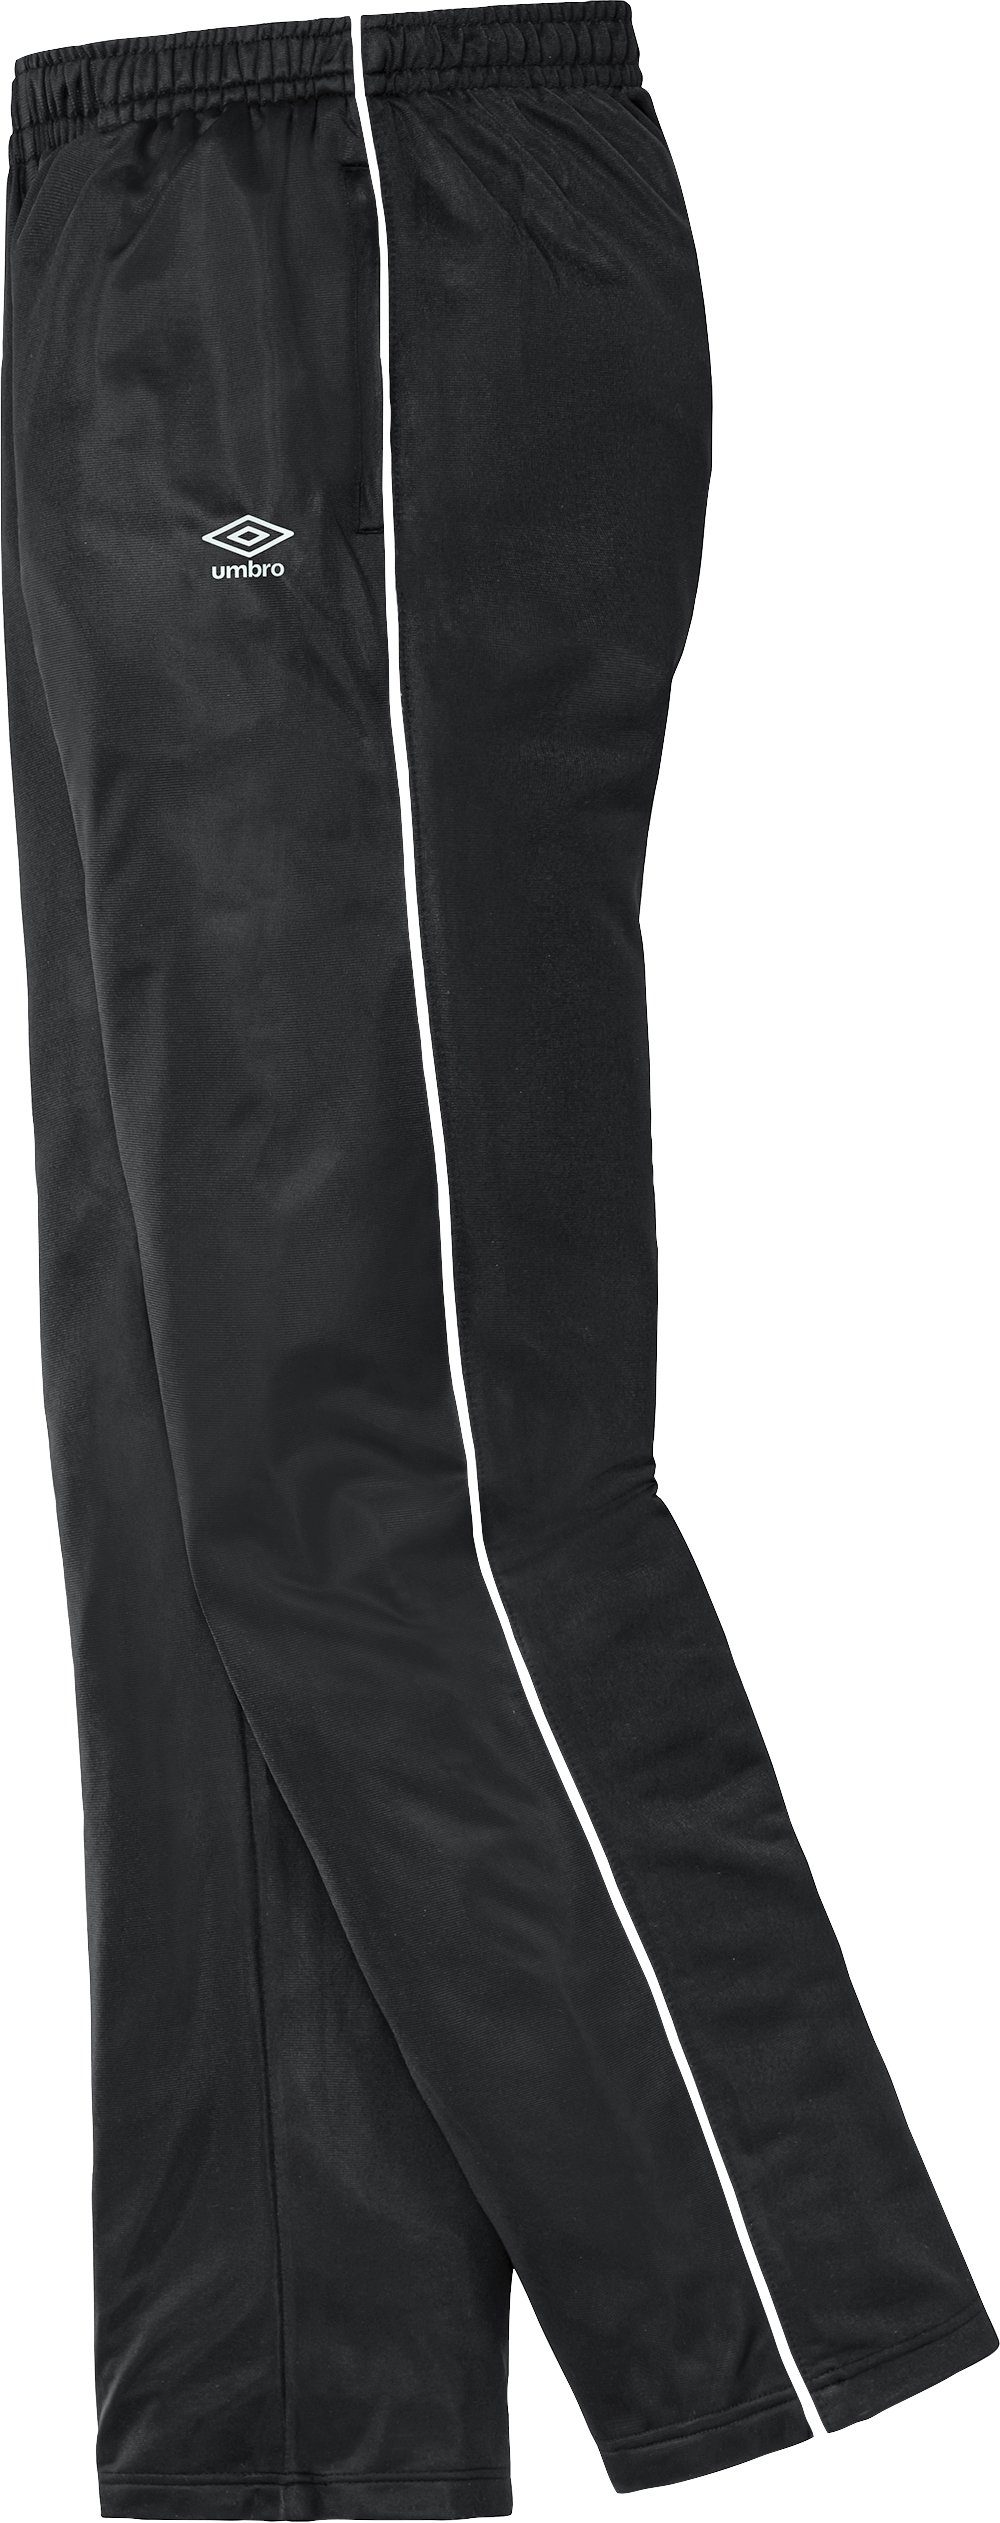 2er-Pack) Jogginghose Reißverschlusstaschen Umbro (Packung, praktischen mit